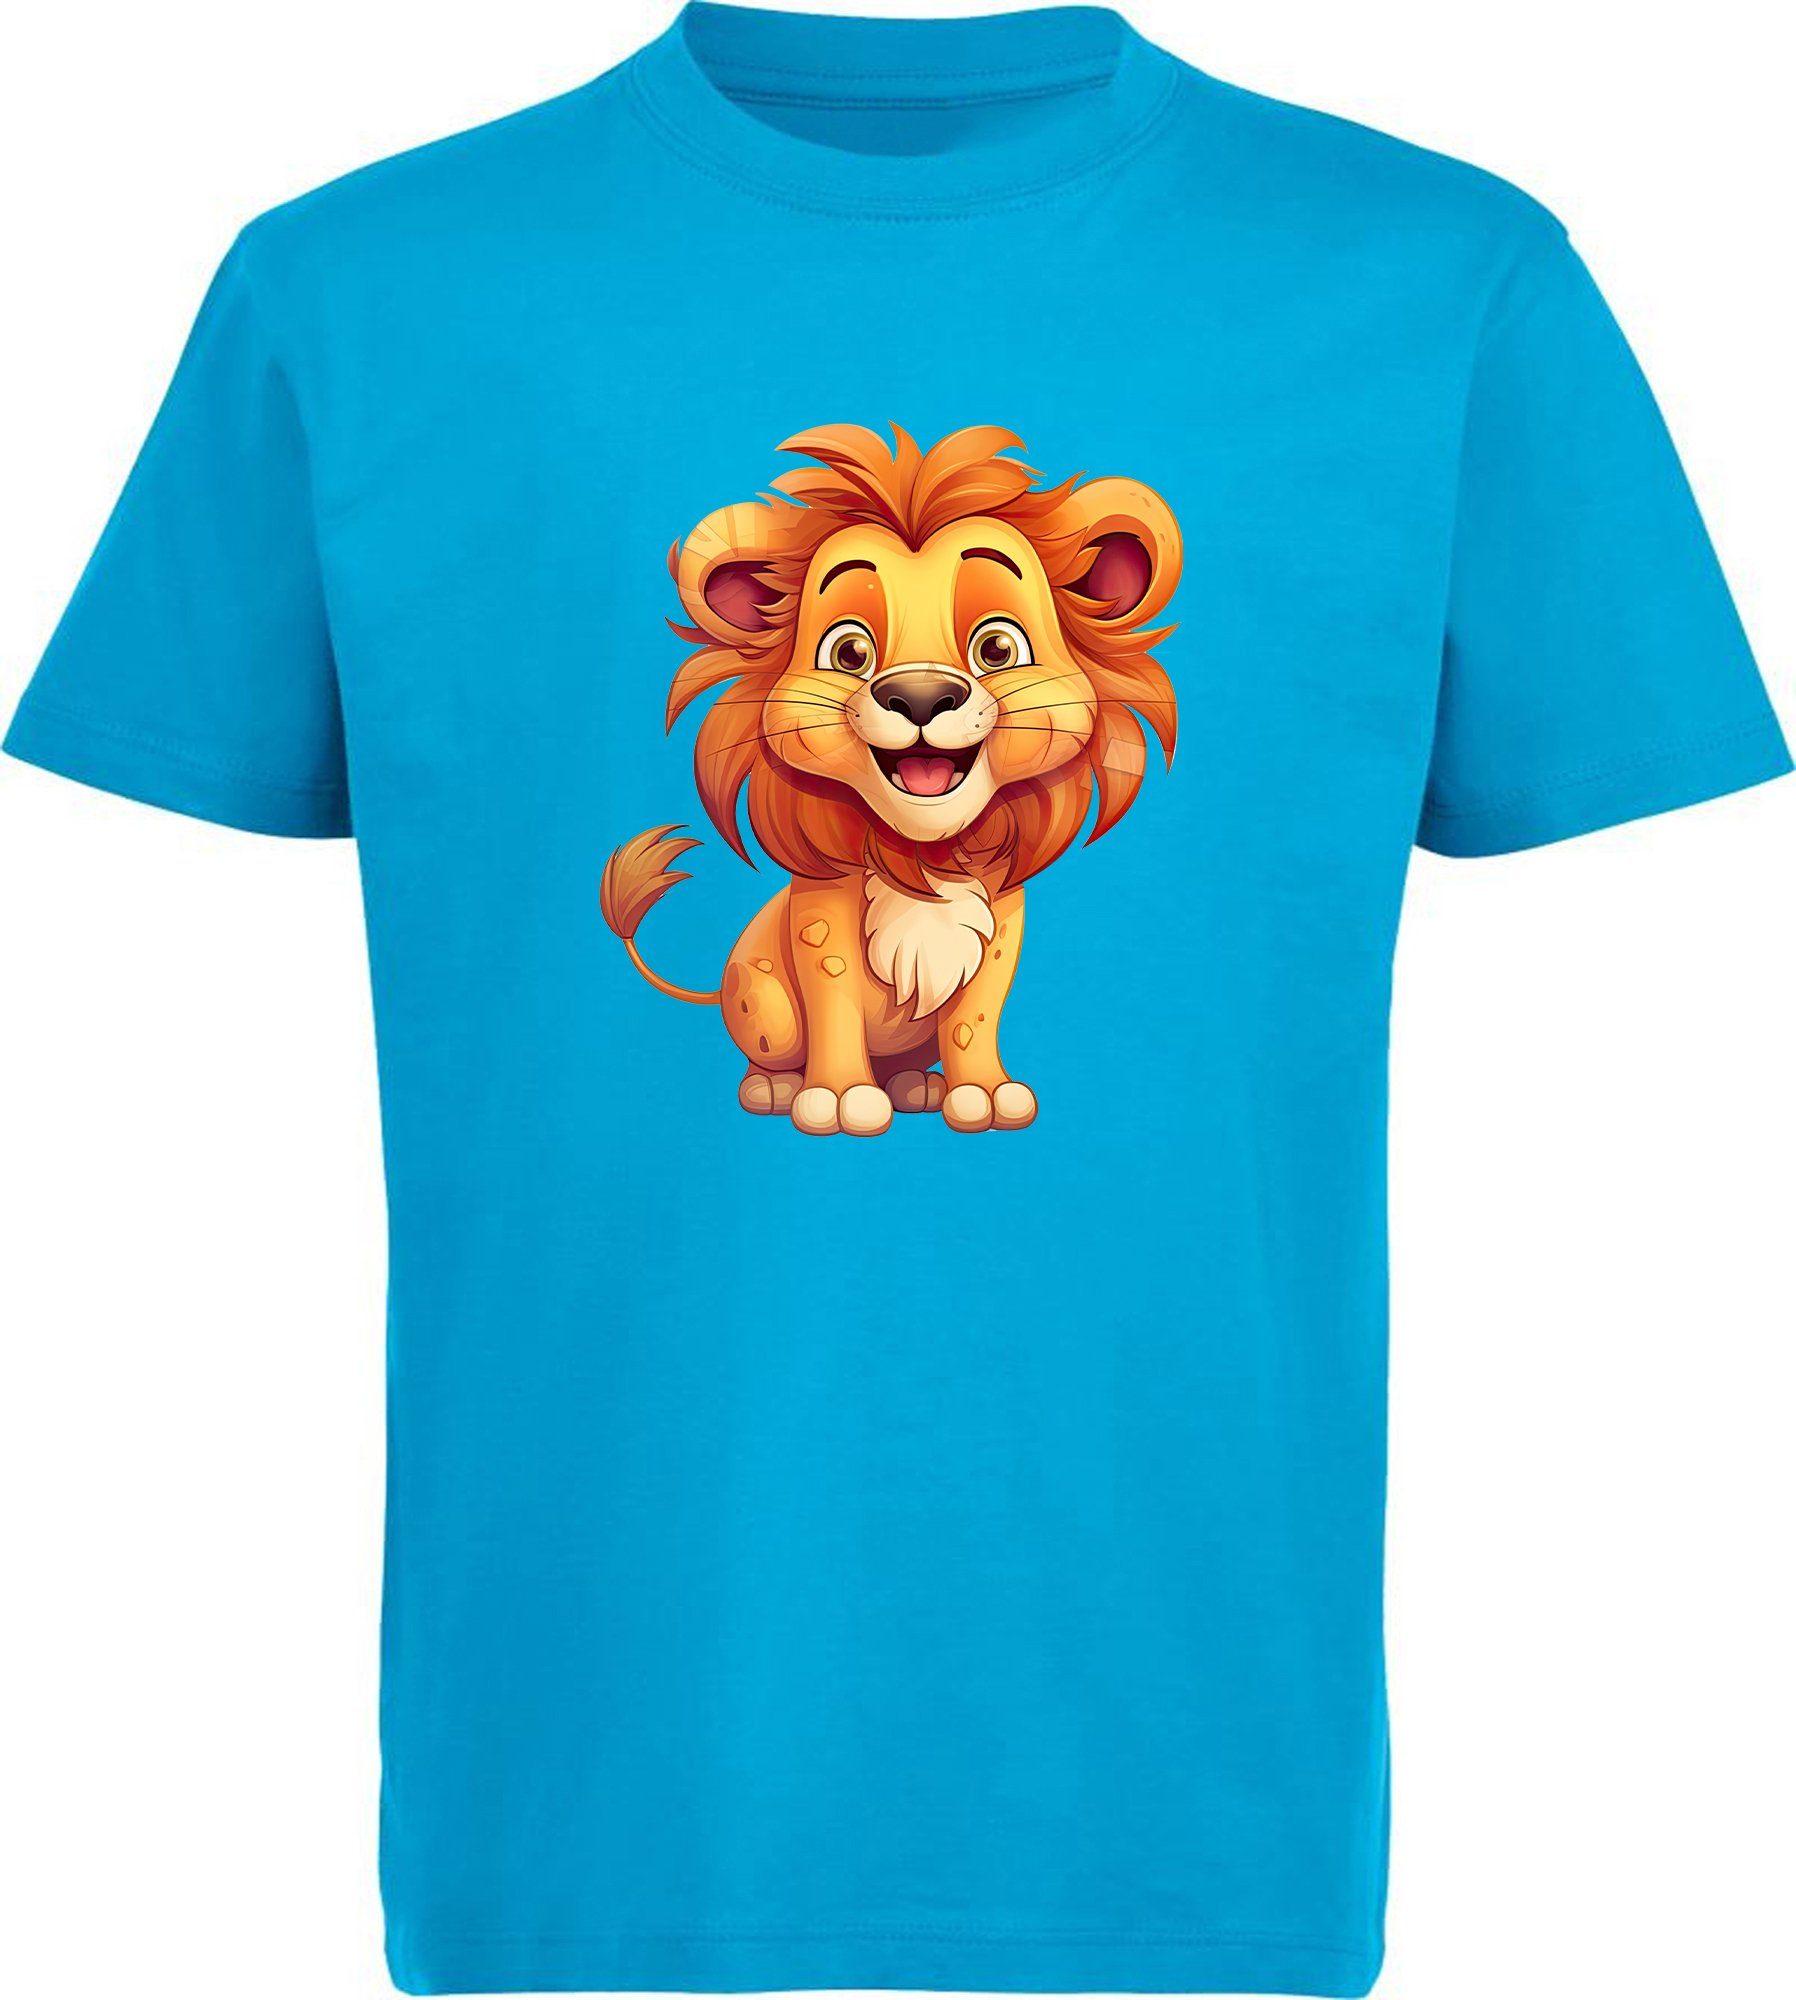 MyDesign24 T-Shirt Kinder Wildtier Print Shirt bedruckt - Baby Löwe Baumwollshirt mit Aufdruck, i275 aqua blau